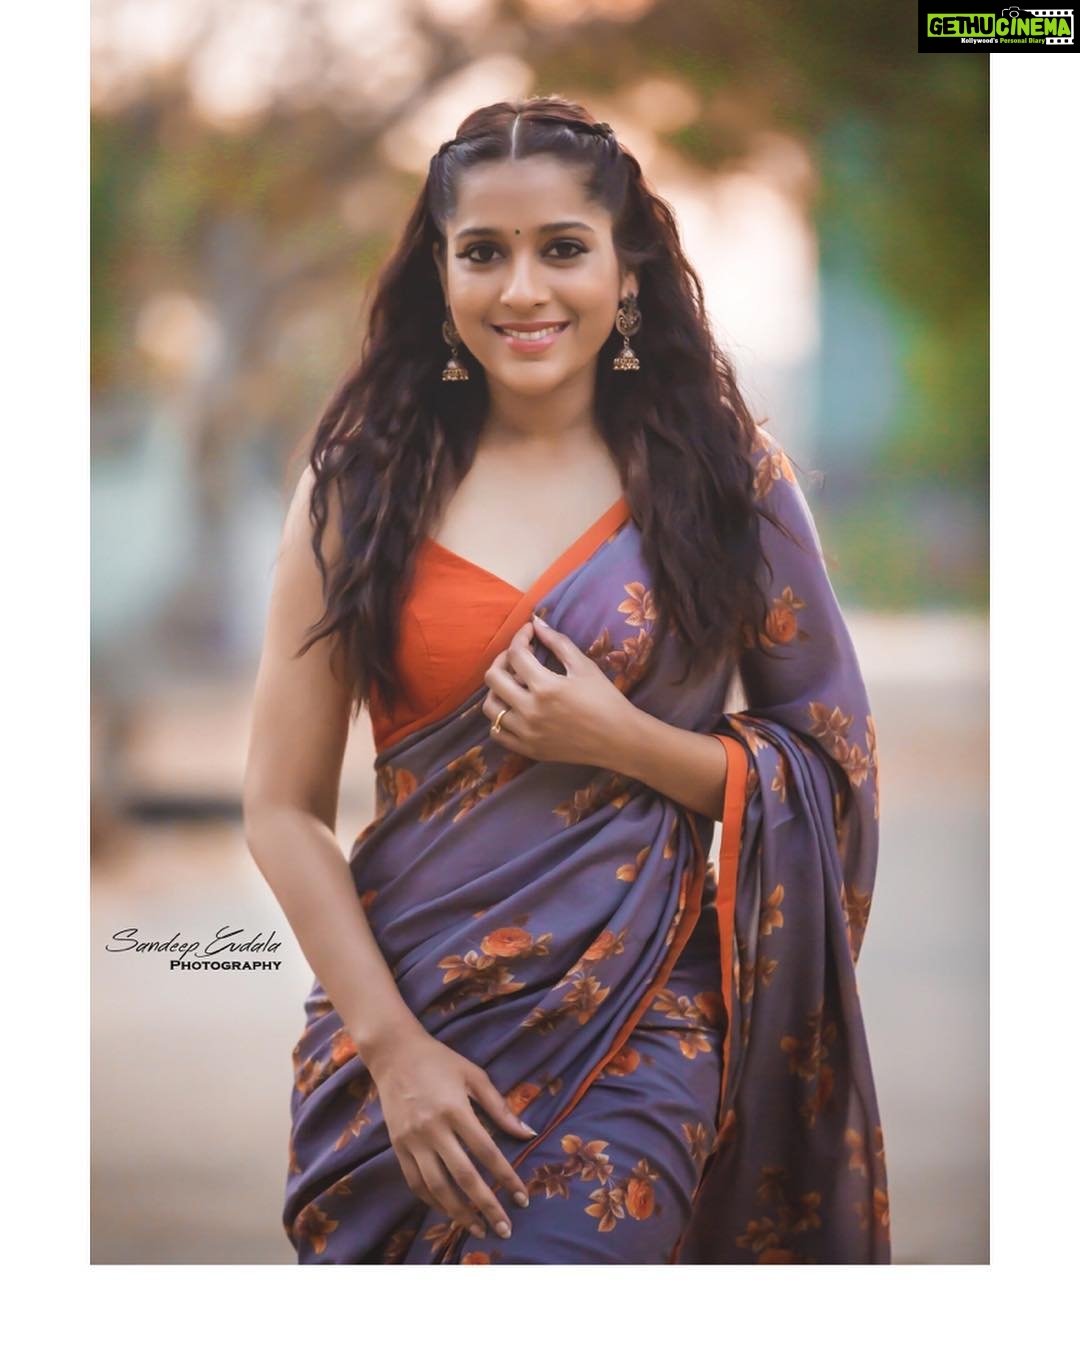 Actress Rashmi Gautam Instagram Photos and Posts May 2019 - Gethu Cinema